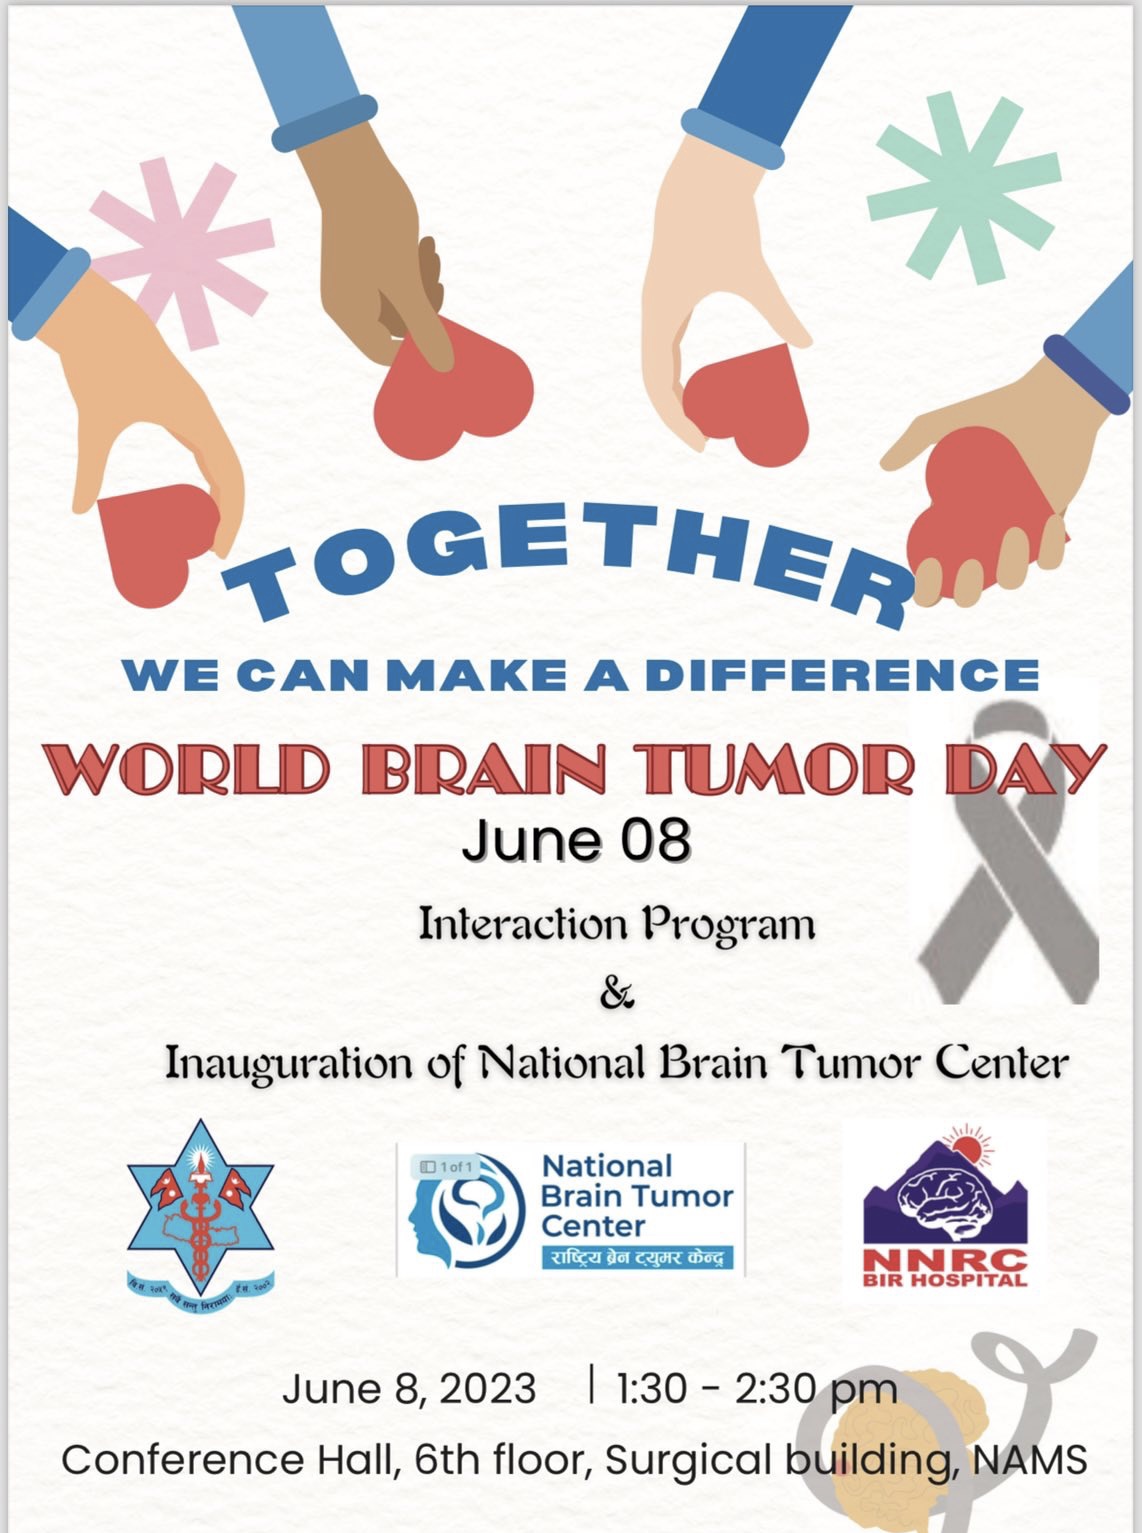 World Brain Tumor Day 